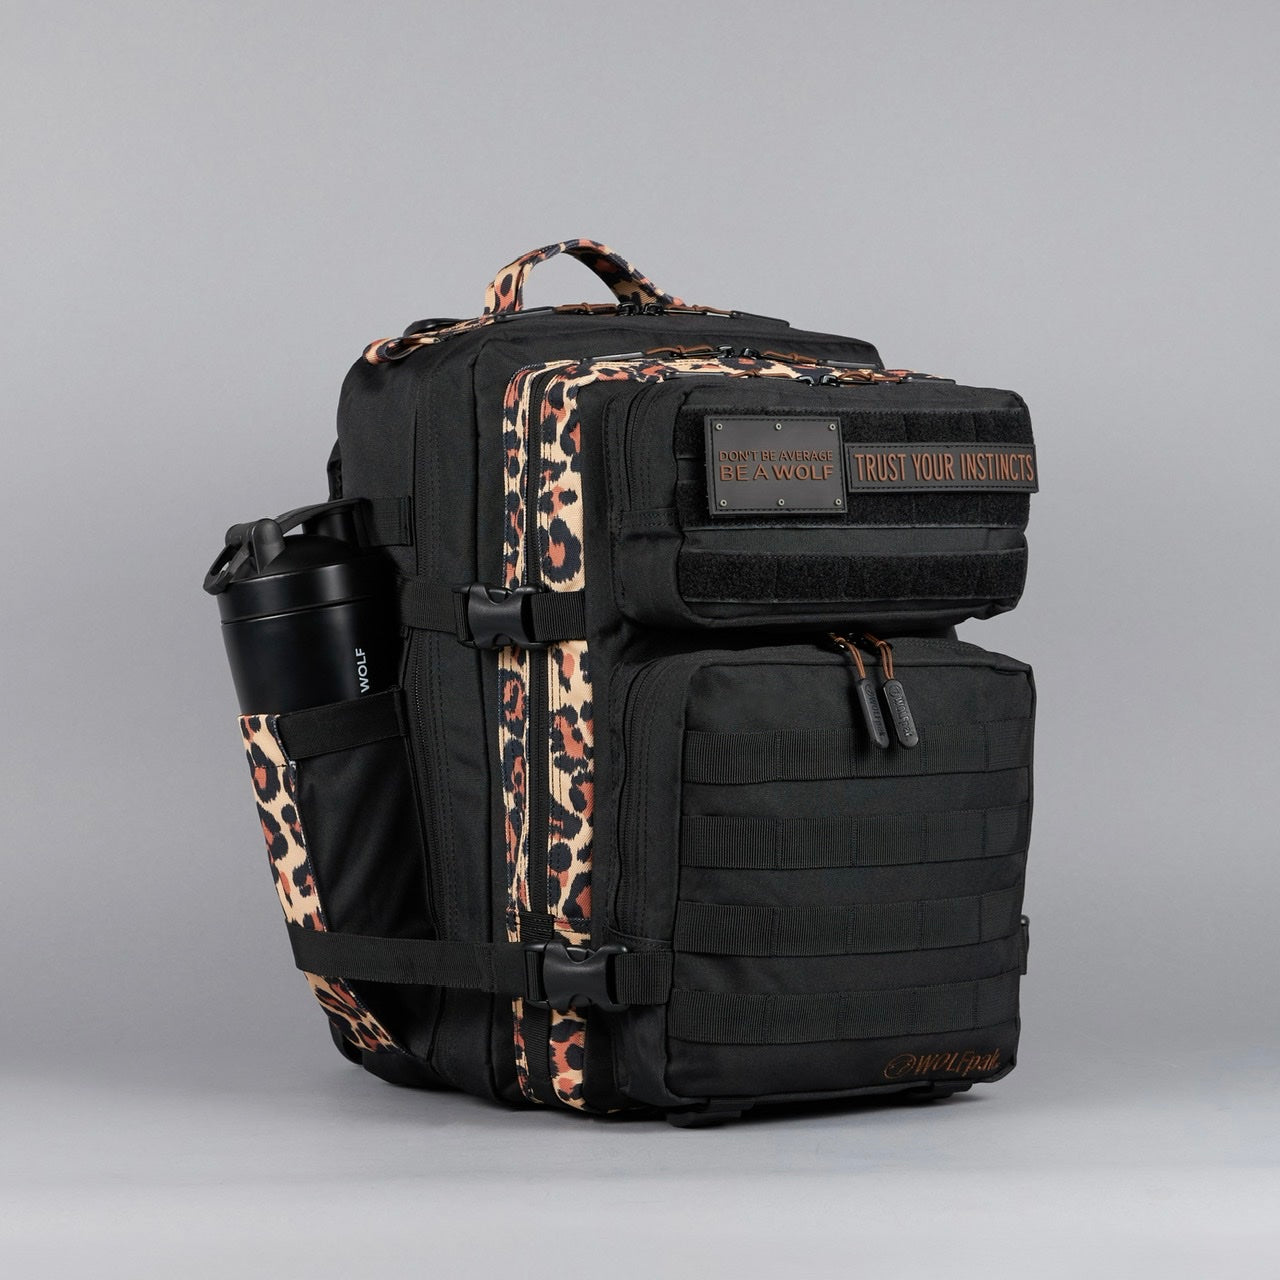 35L Backpack Alpha Black Leopard Limited Edition